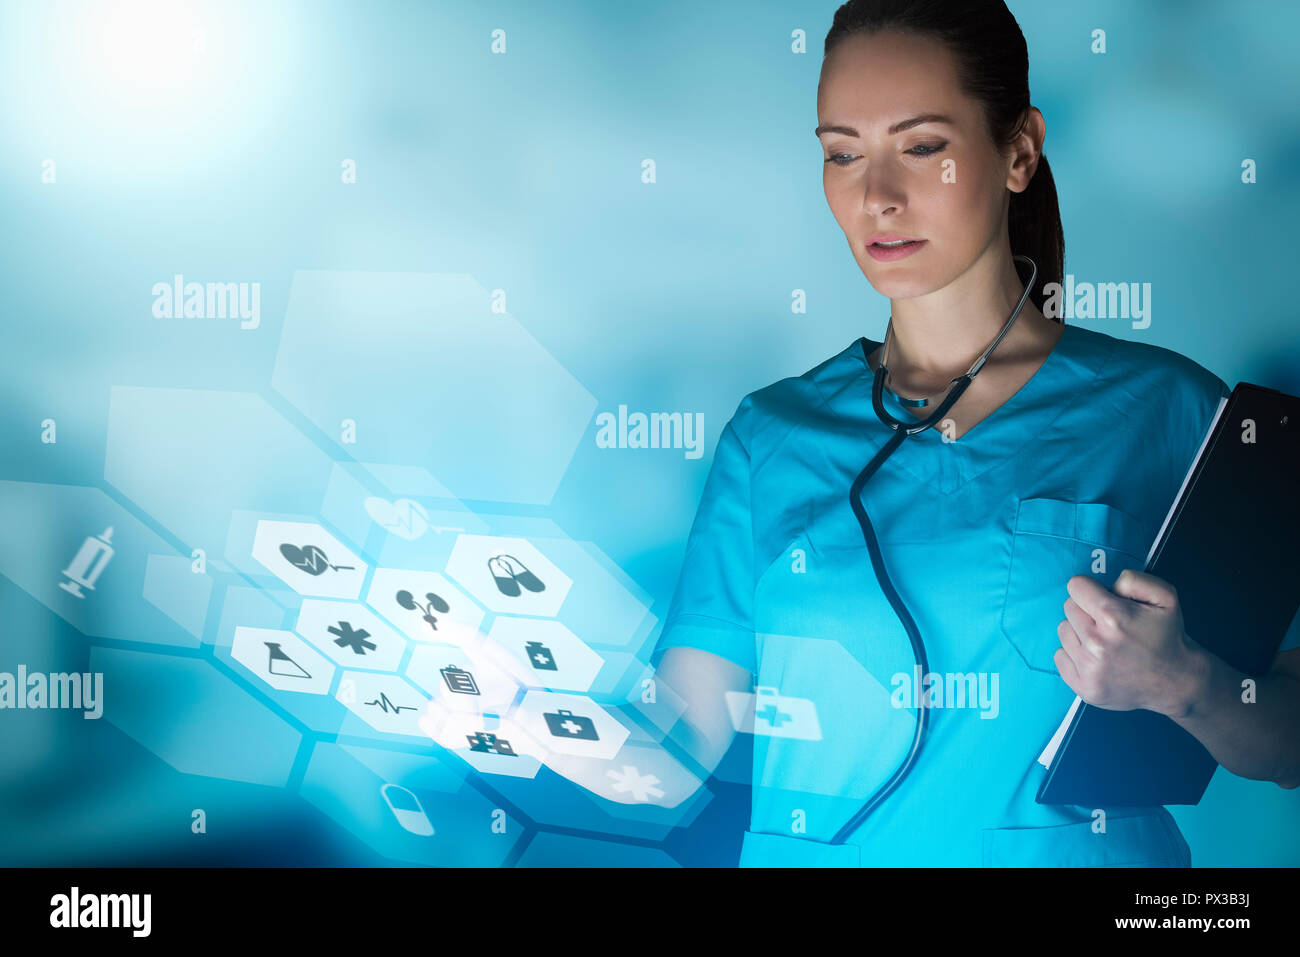 Femme médecin ou infirmière concept qui est à l'aide de technologies novatrices pour gérer son travail à l'hôpital, technique mixte avec copie espace pour la publicité Banque D'Images